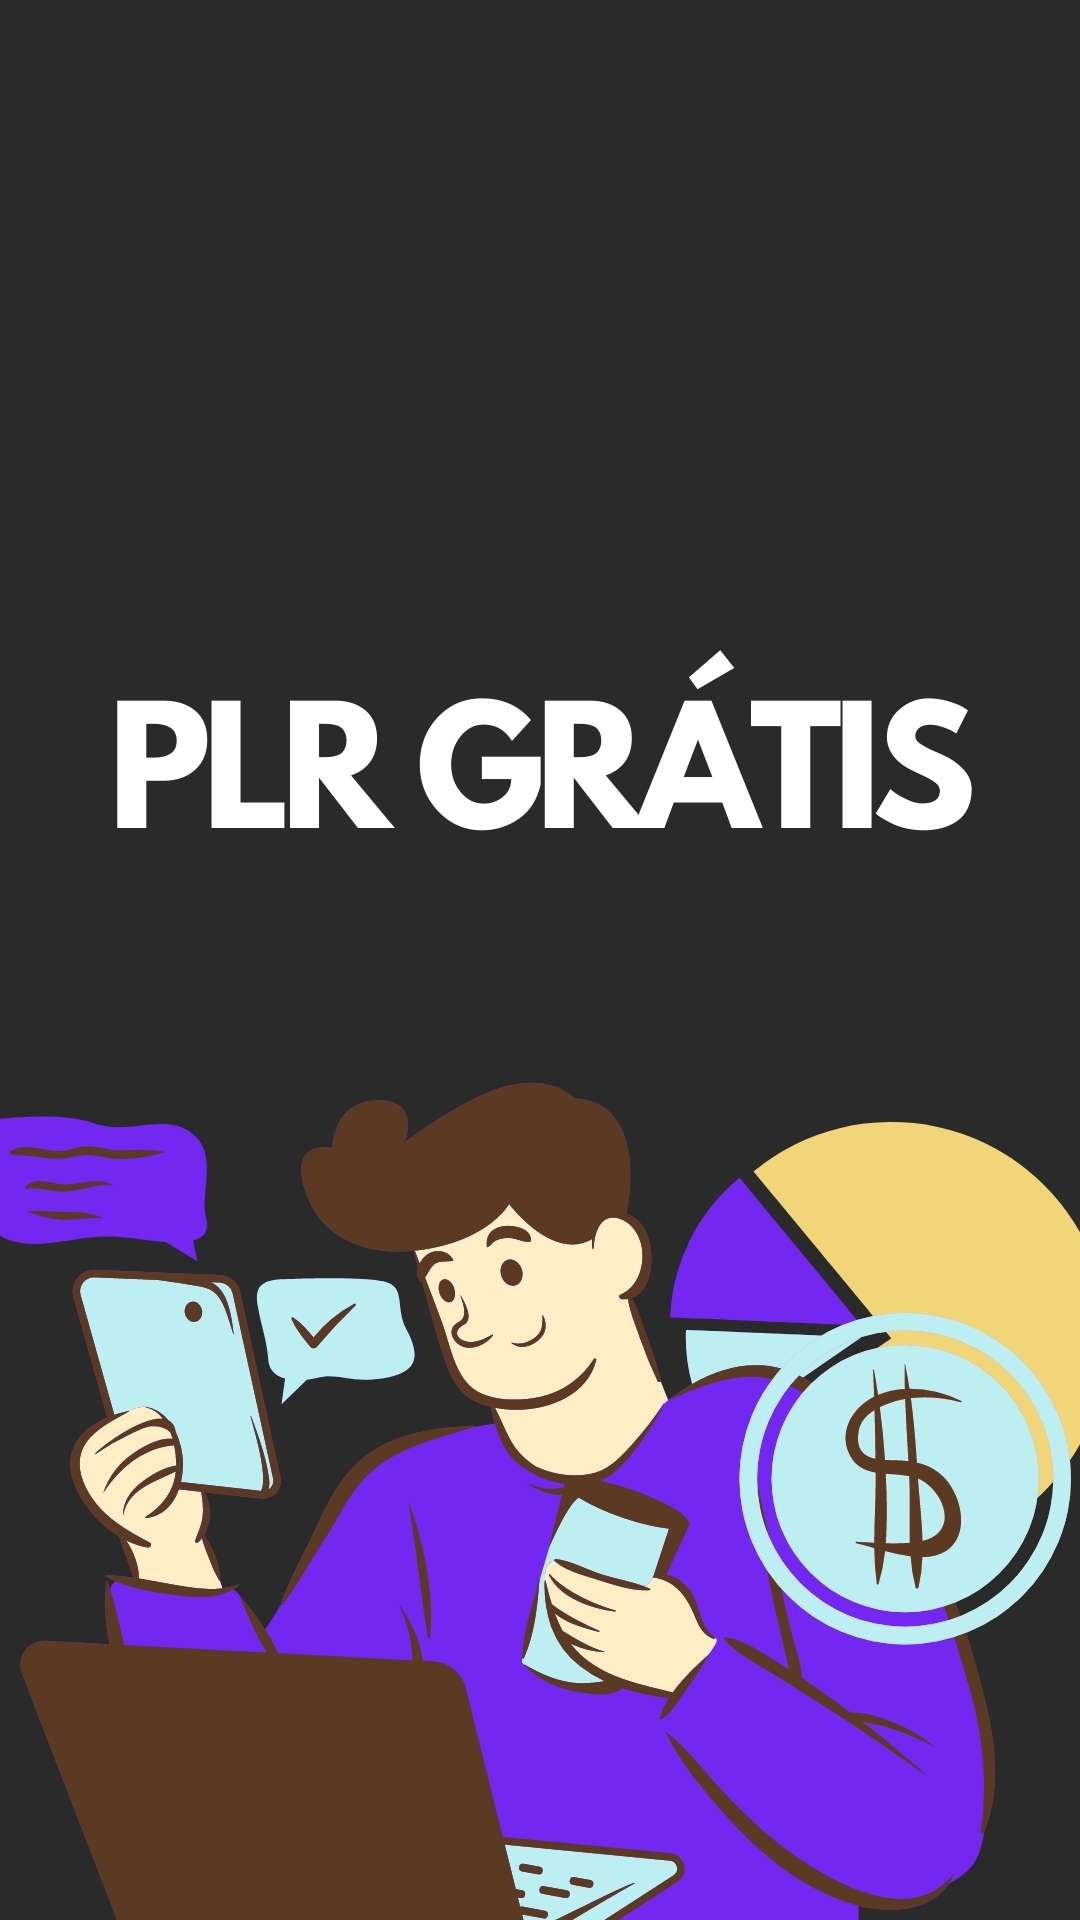 Sites para baixar PLR grátis e vender – HeroSpark Blog